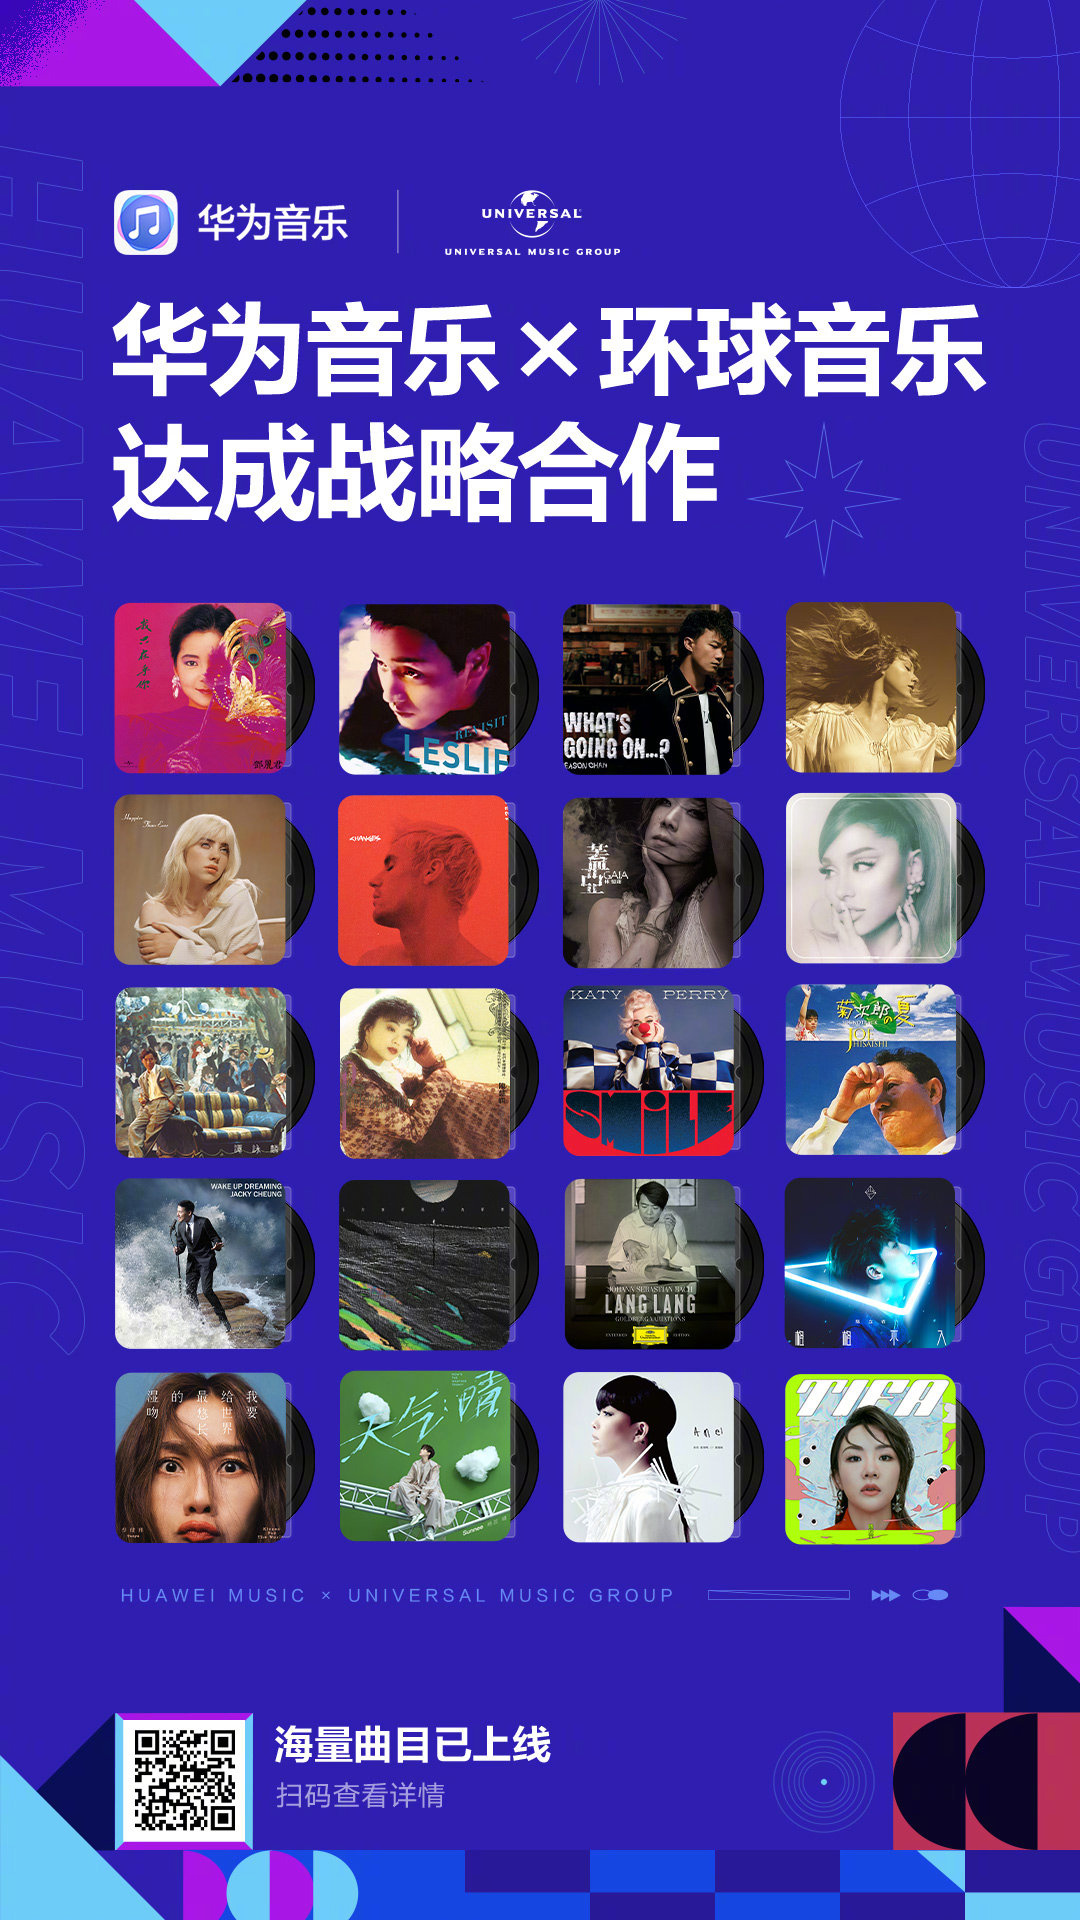 华为音乐和环球音乐首次在中国内地达成版权合作.jpg